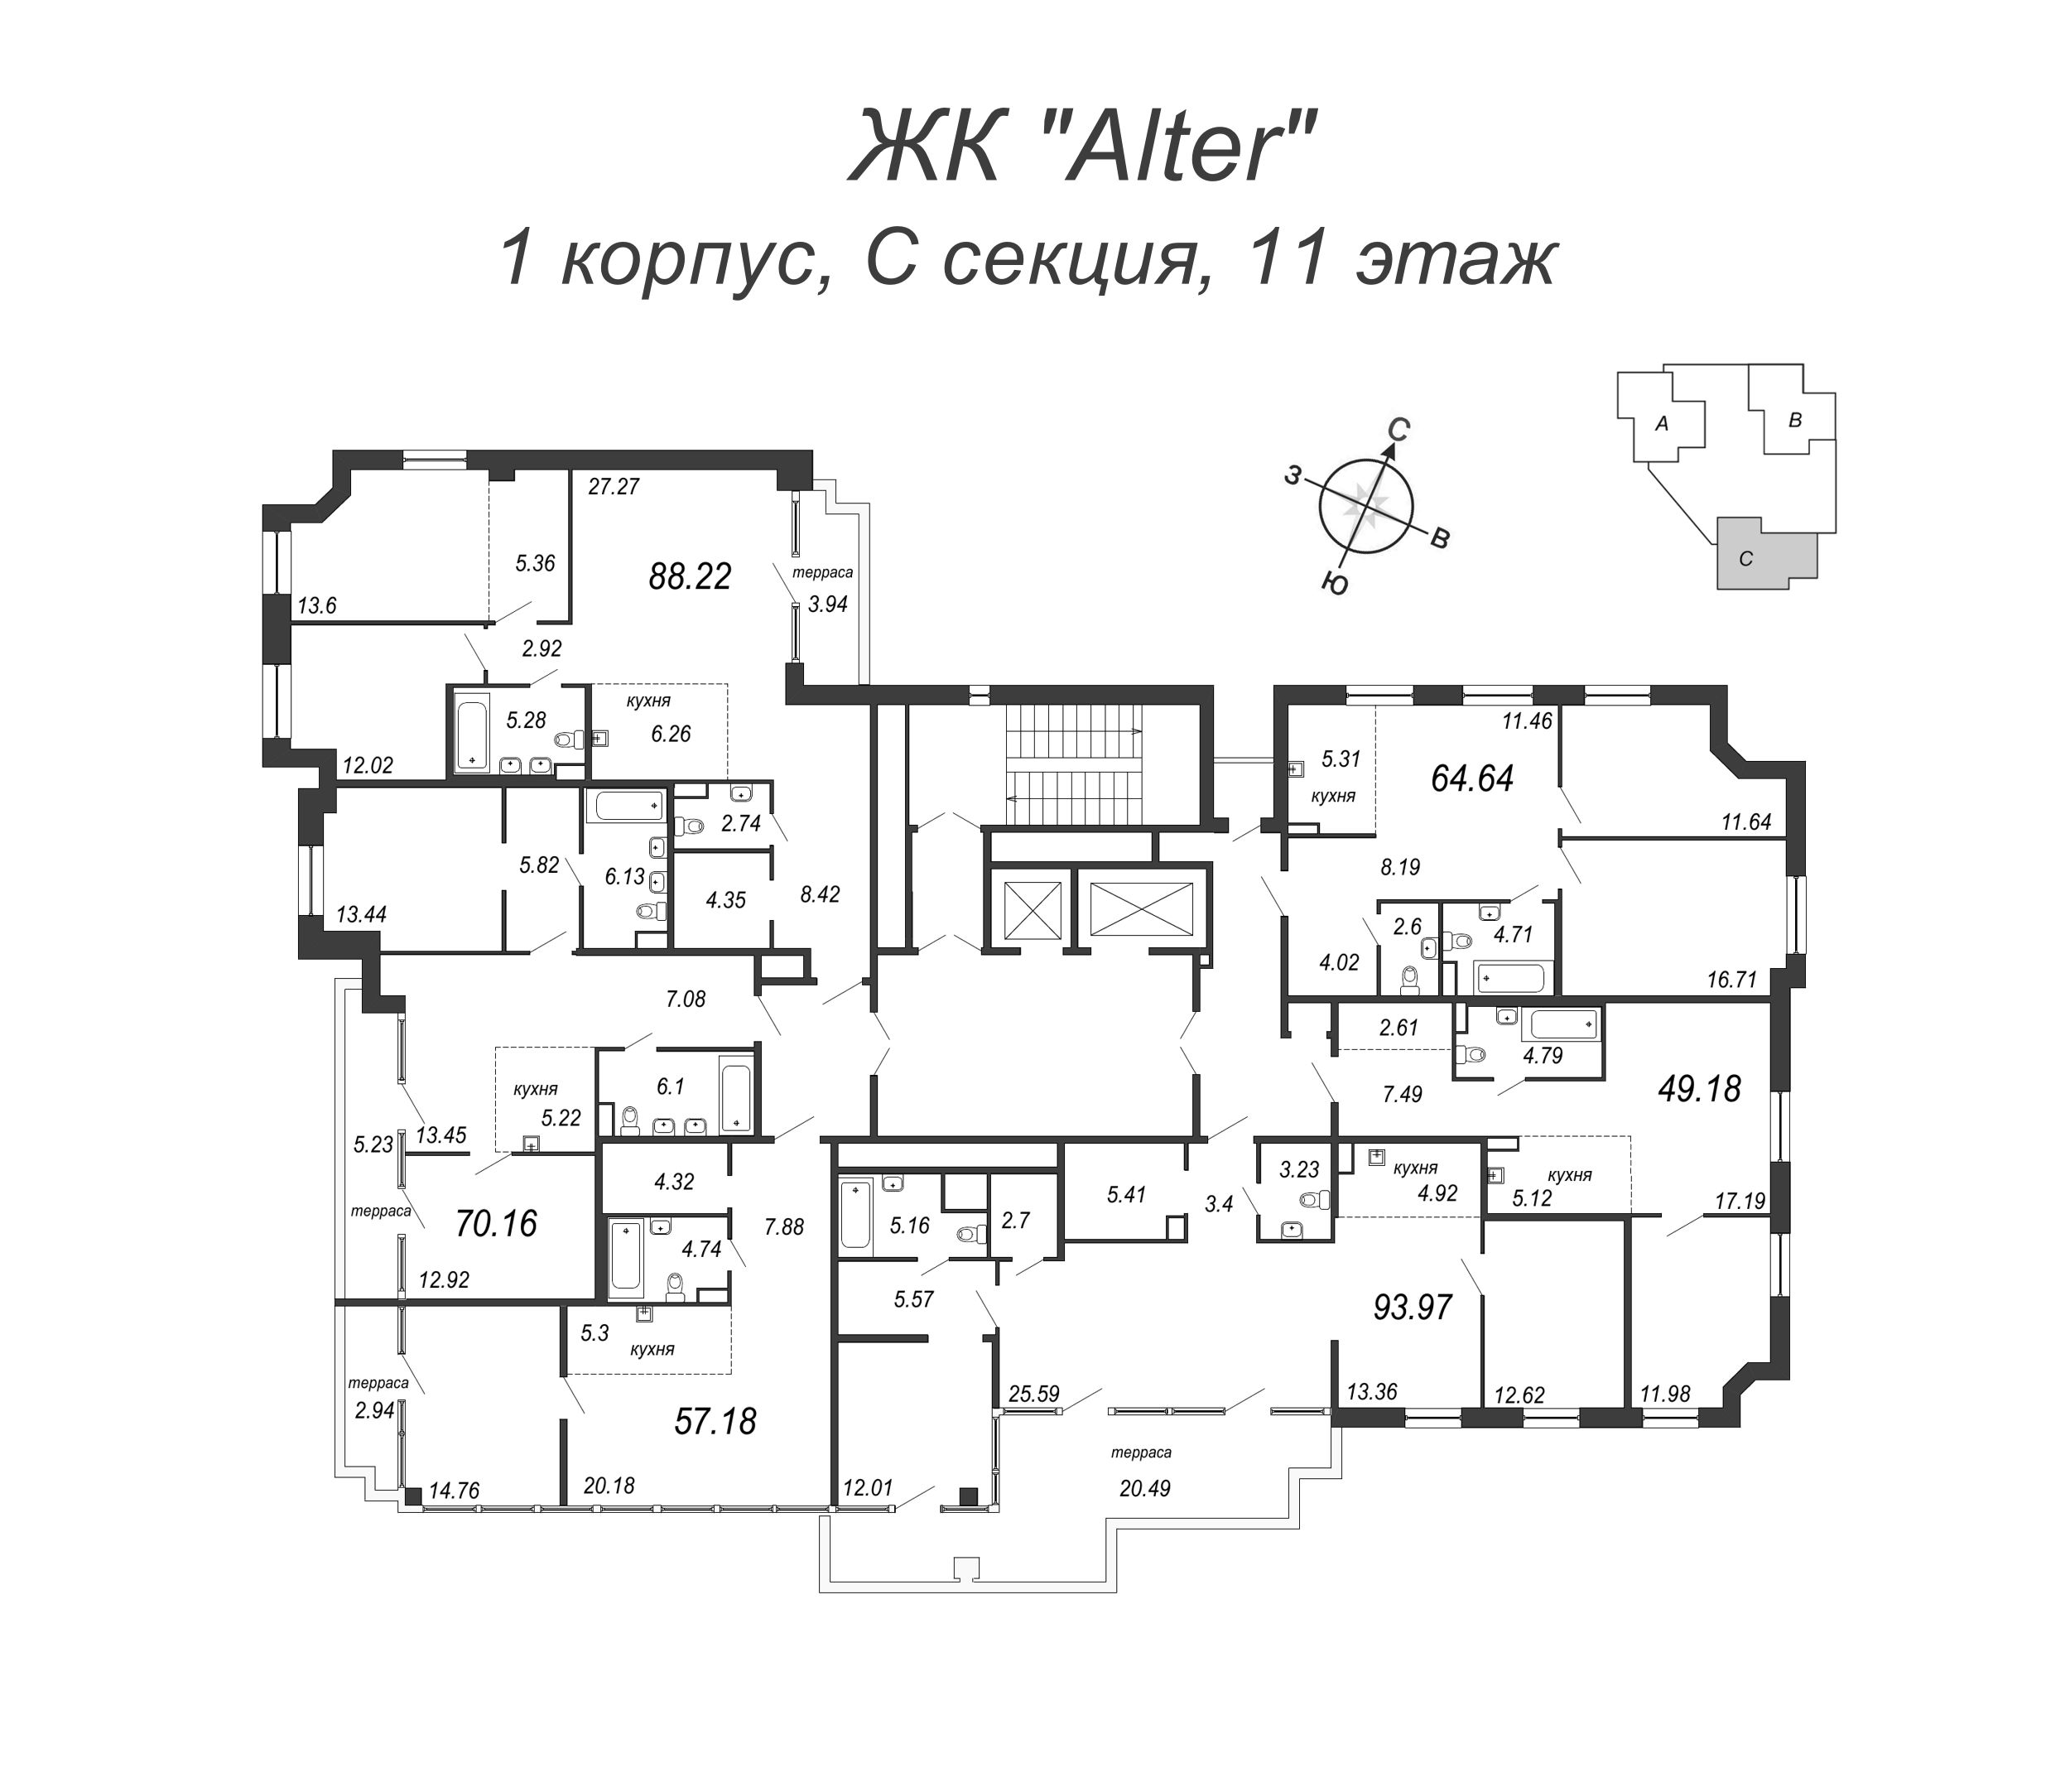 3-комнатная (Евро) квартира, 89.4 м² в ЖК "Alter" - планировка этажа